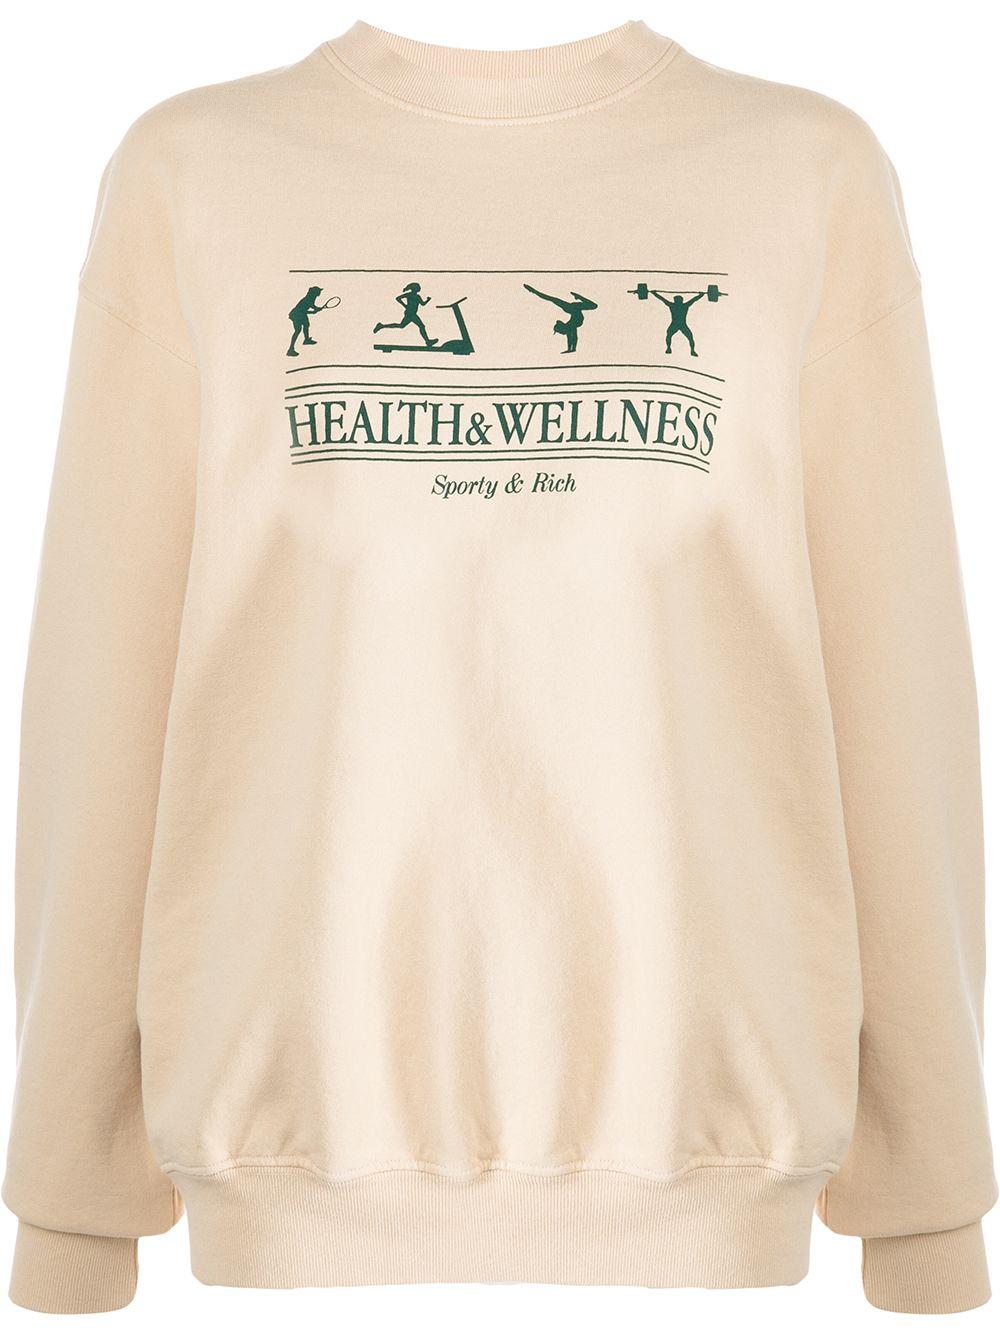 Damen Bekleidung Sport- Sporty & Rich Baumwolle Wellness Sweatshirt Aus Baumwoll-jersey Mit Print in Grau Training und Fitnesskleidung Sweatshirts 